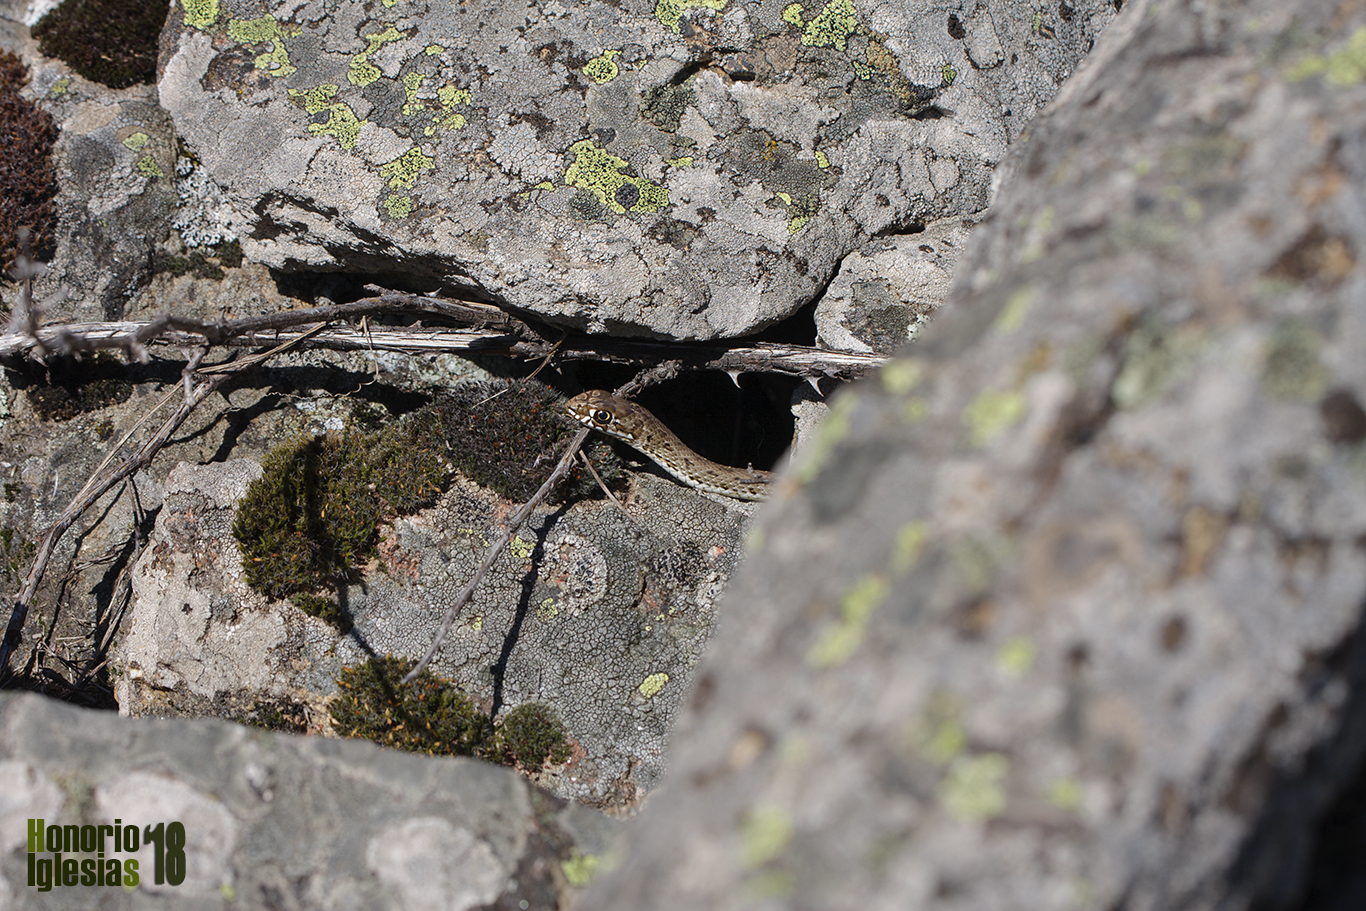 Ejemplar subadulto de culebra bastarda (Malpolon monspessulanus) en la pedrera de Cabeza de Gatos en los Montes de Valsaín donde fue localizado.